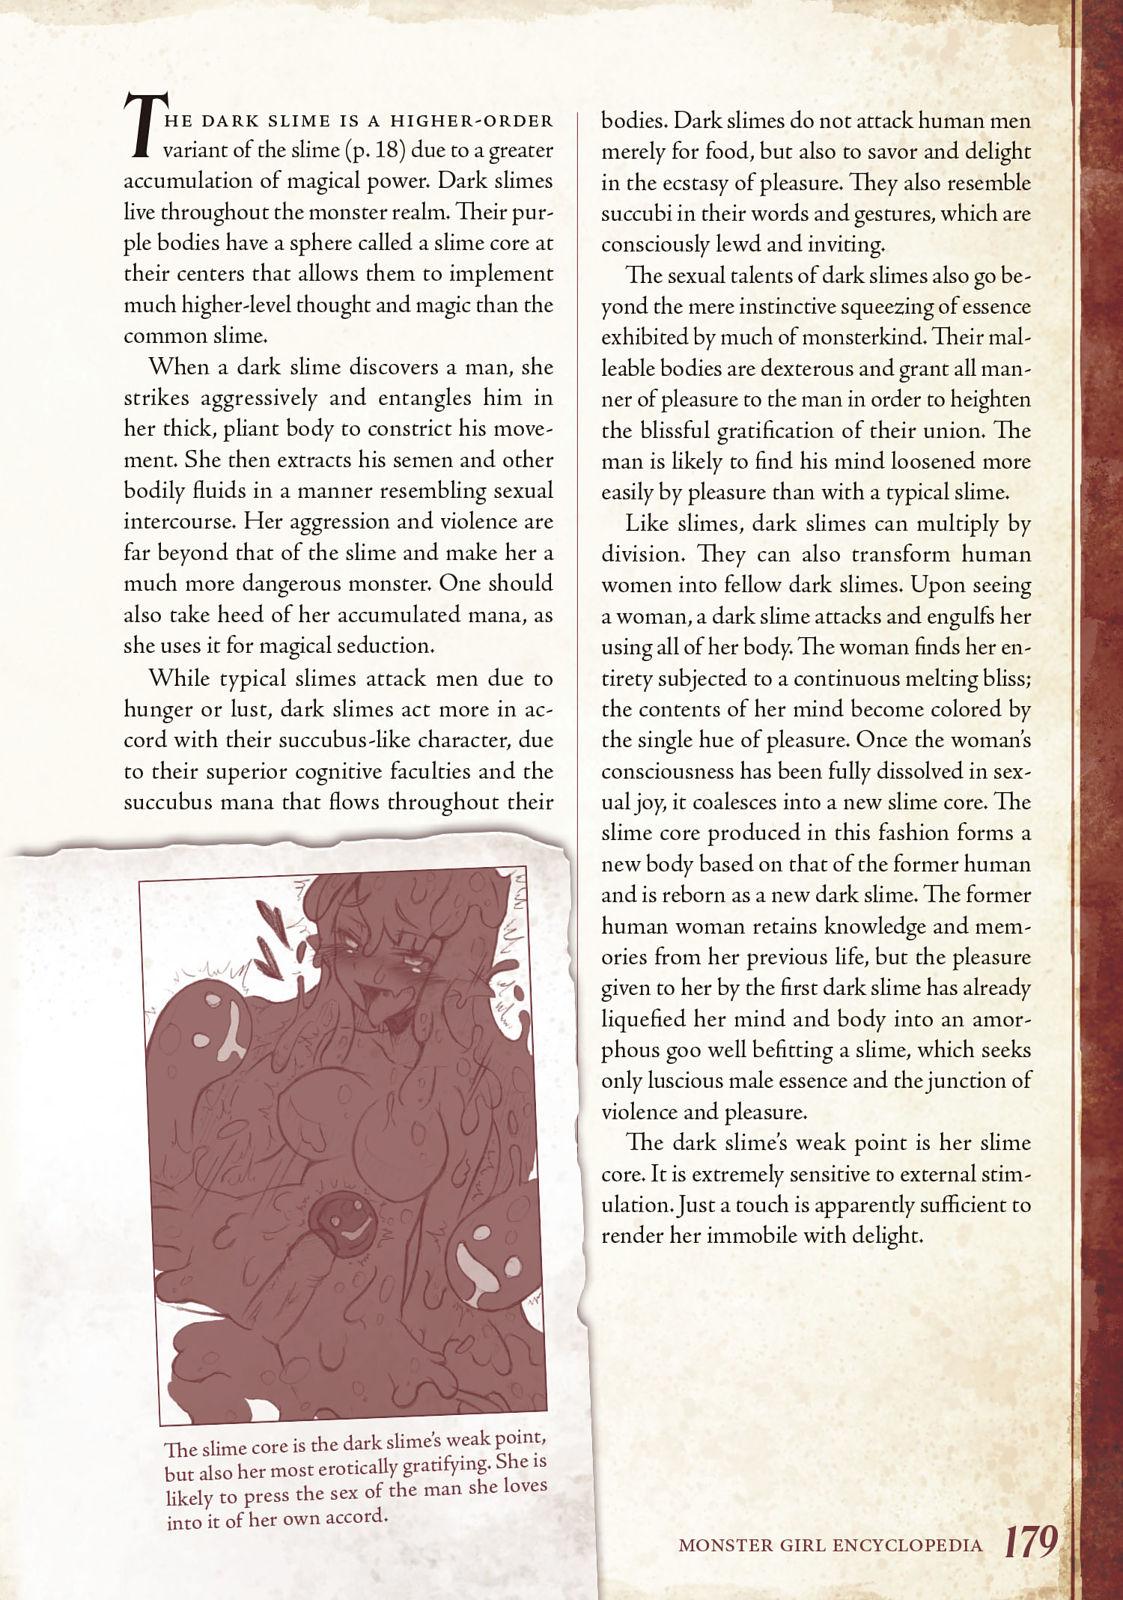 Monster Girl Encyclopedia Vol. 1 179